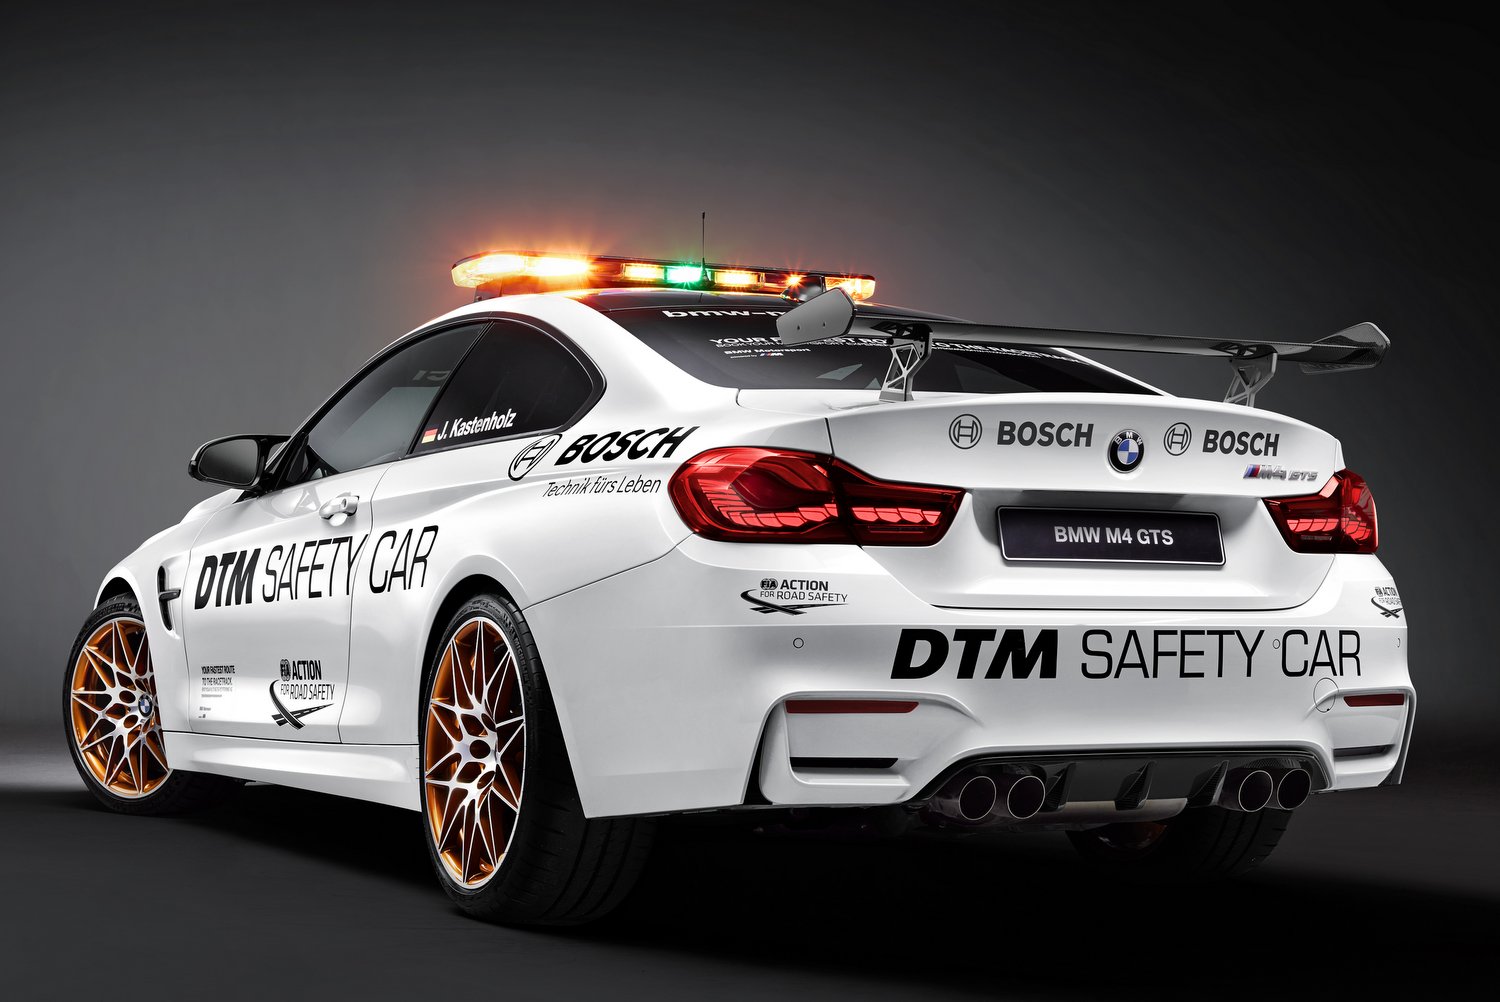 A legsportosabb BMW vigyáz a DTM biztonságára 1